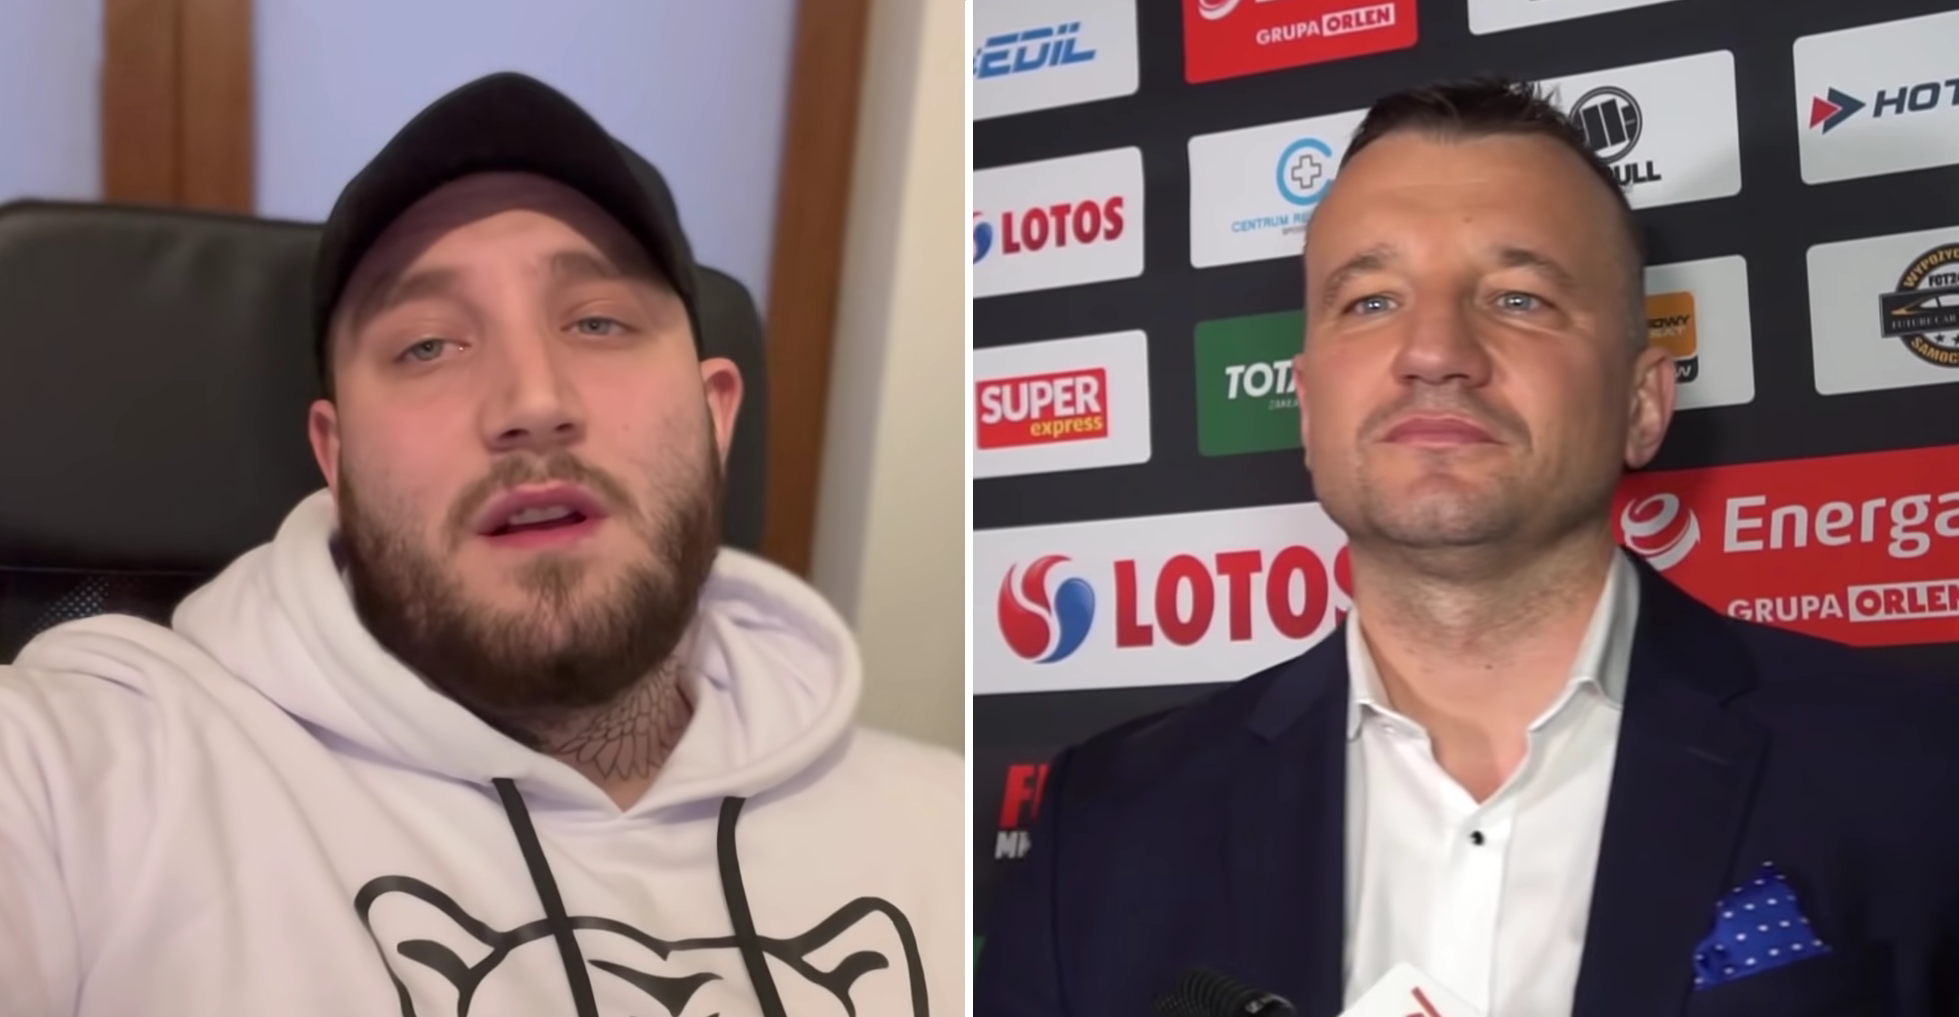 (VIDEO) Paweł Jóźwiak o konflikcie z Boxdelem: "Dostał przykaz od szefów, żeby mnie zaatakować, bo..."